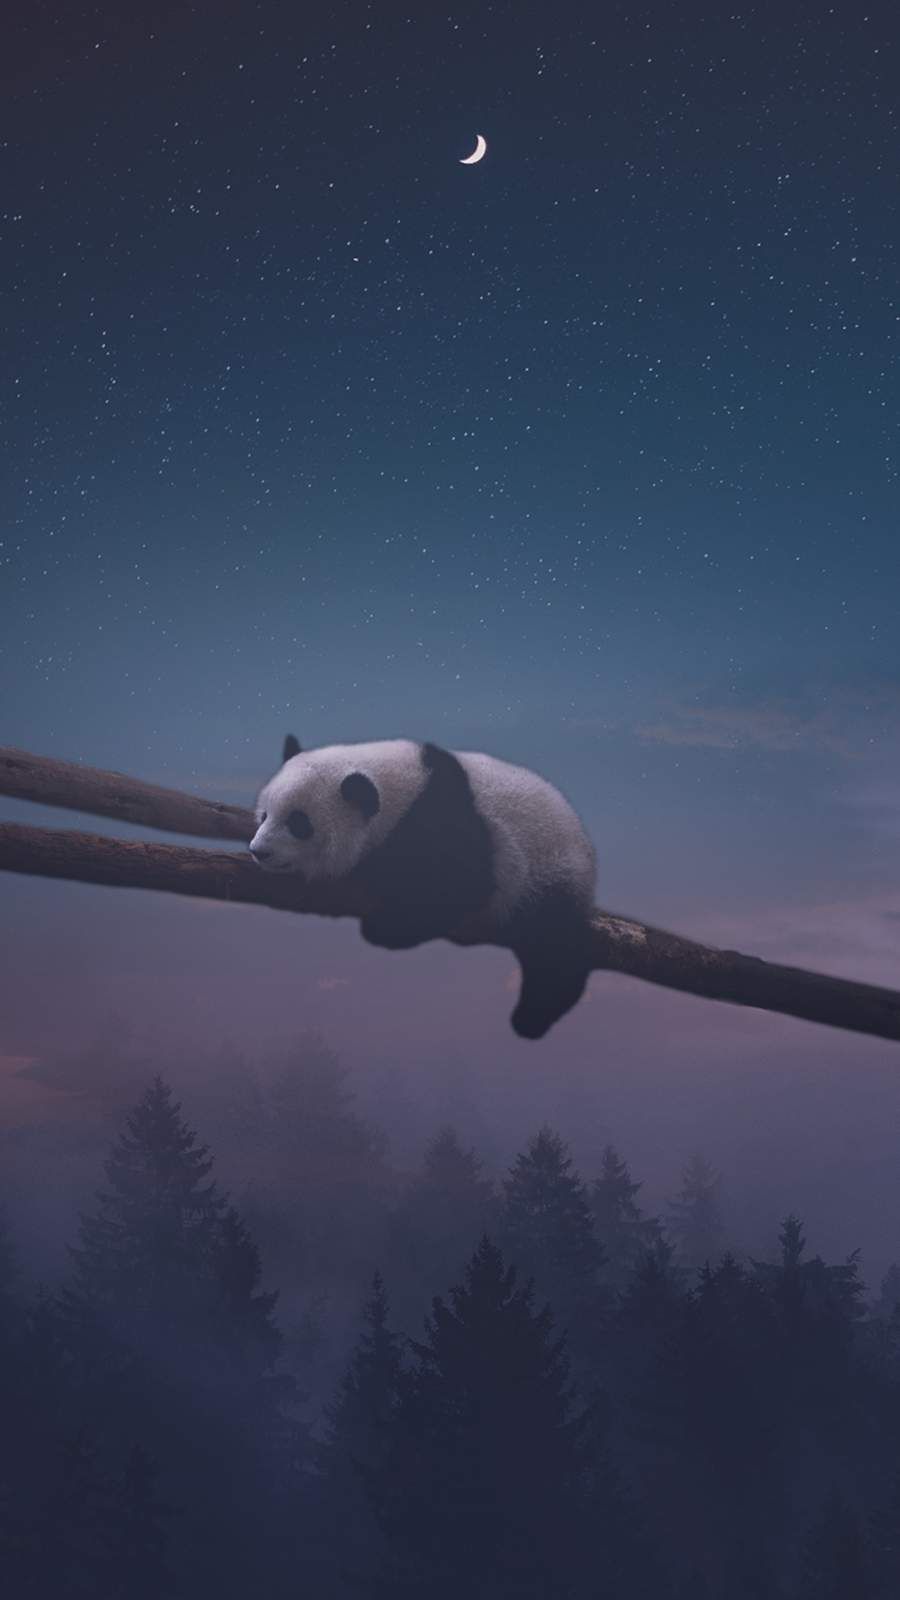 Sleeping Panda iPhone Wallpaper Cute